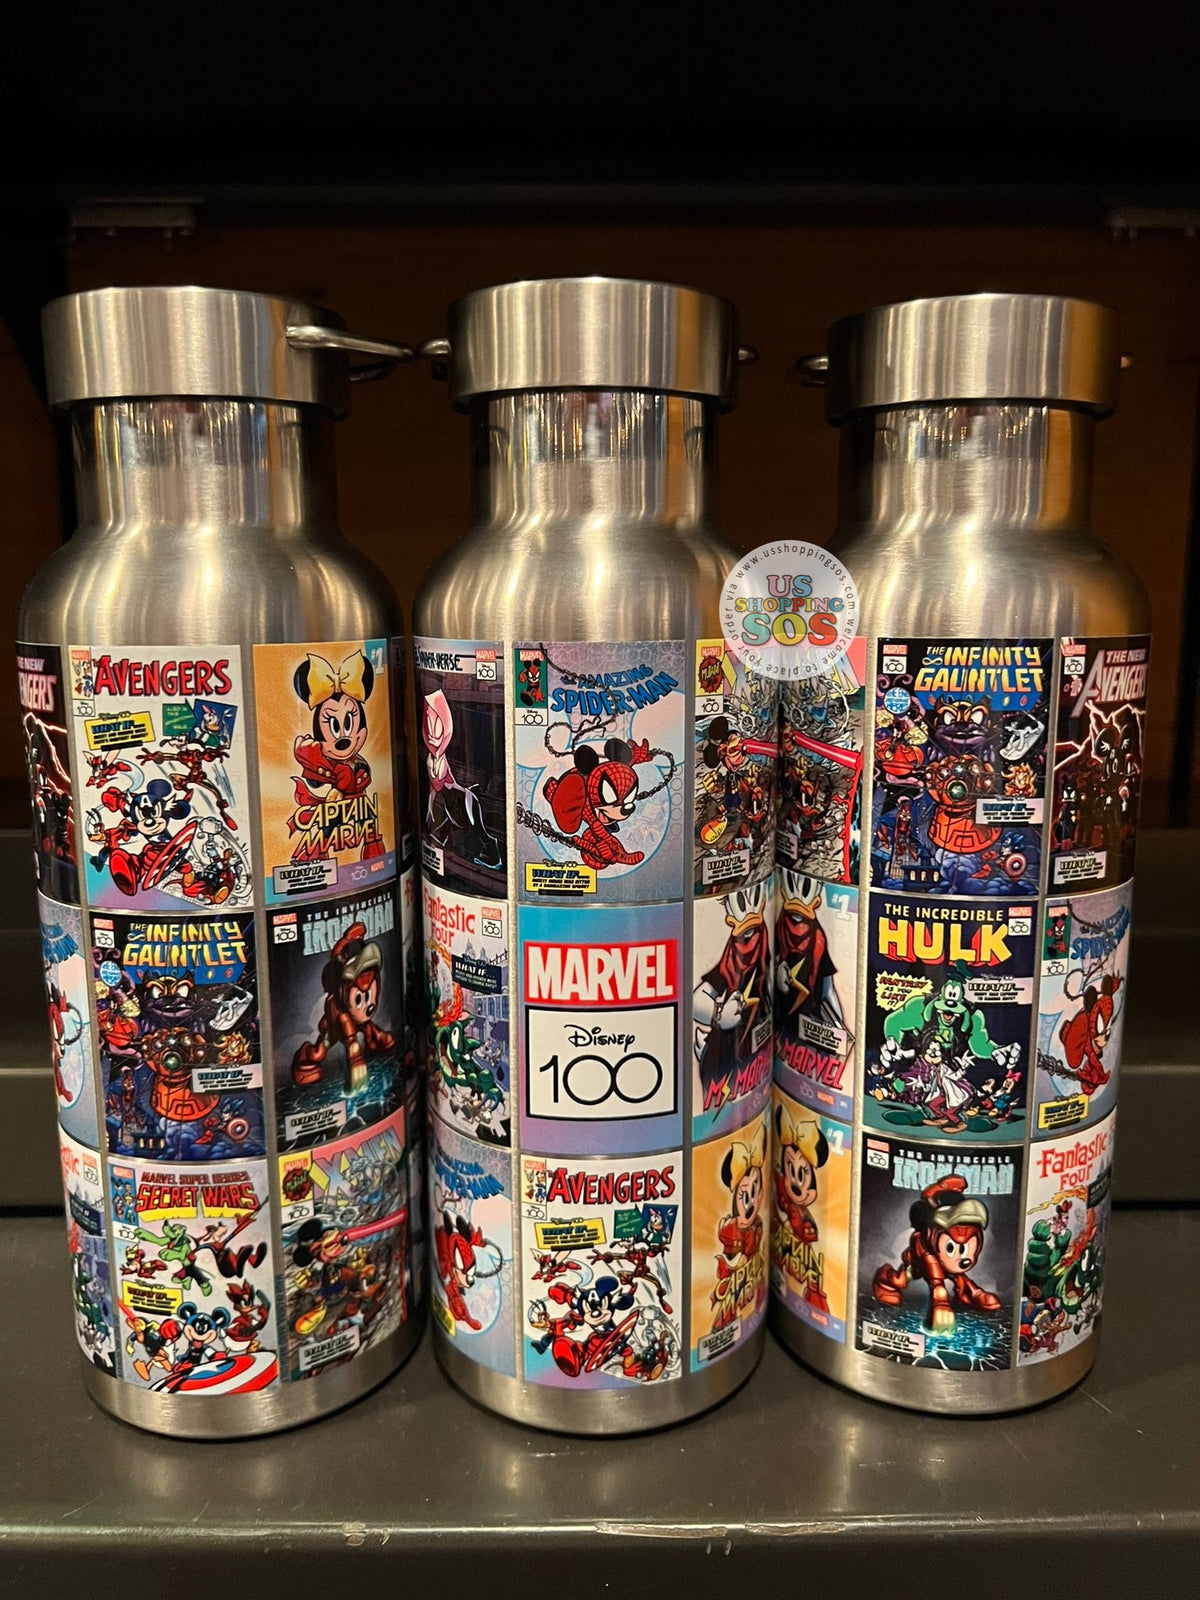 Disney Store Marvel's Avengers Water Bottle